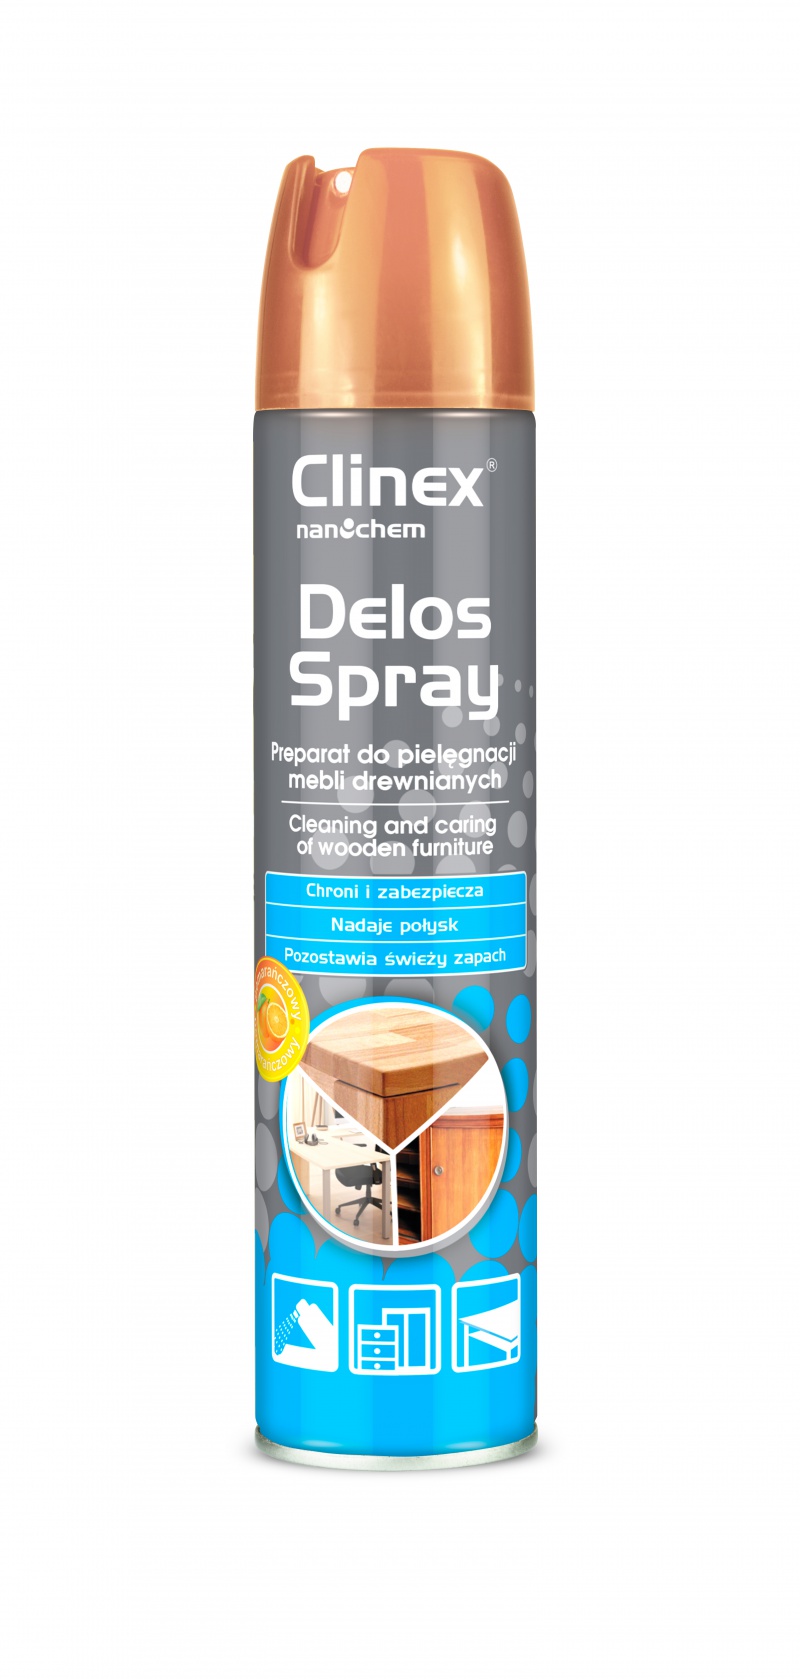 Spray pentru curatare si intretinere mobila, 300 ml, Clinex Delos Shine